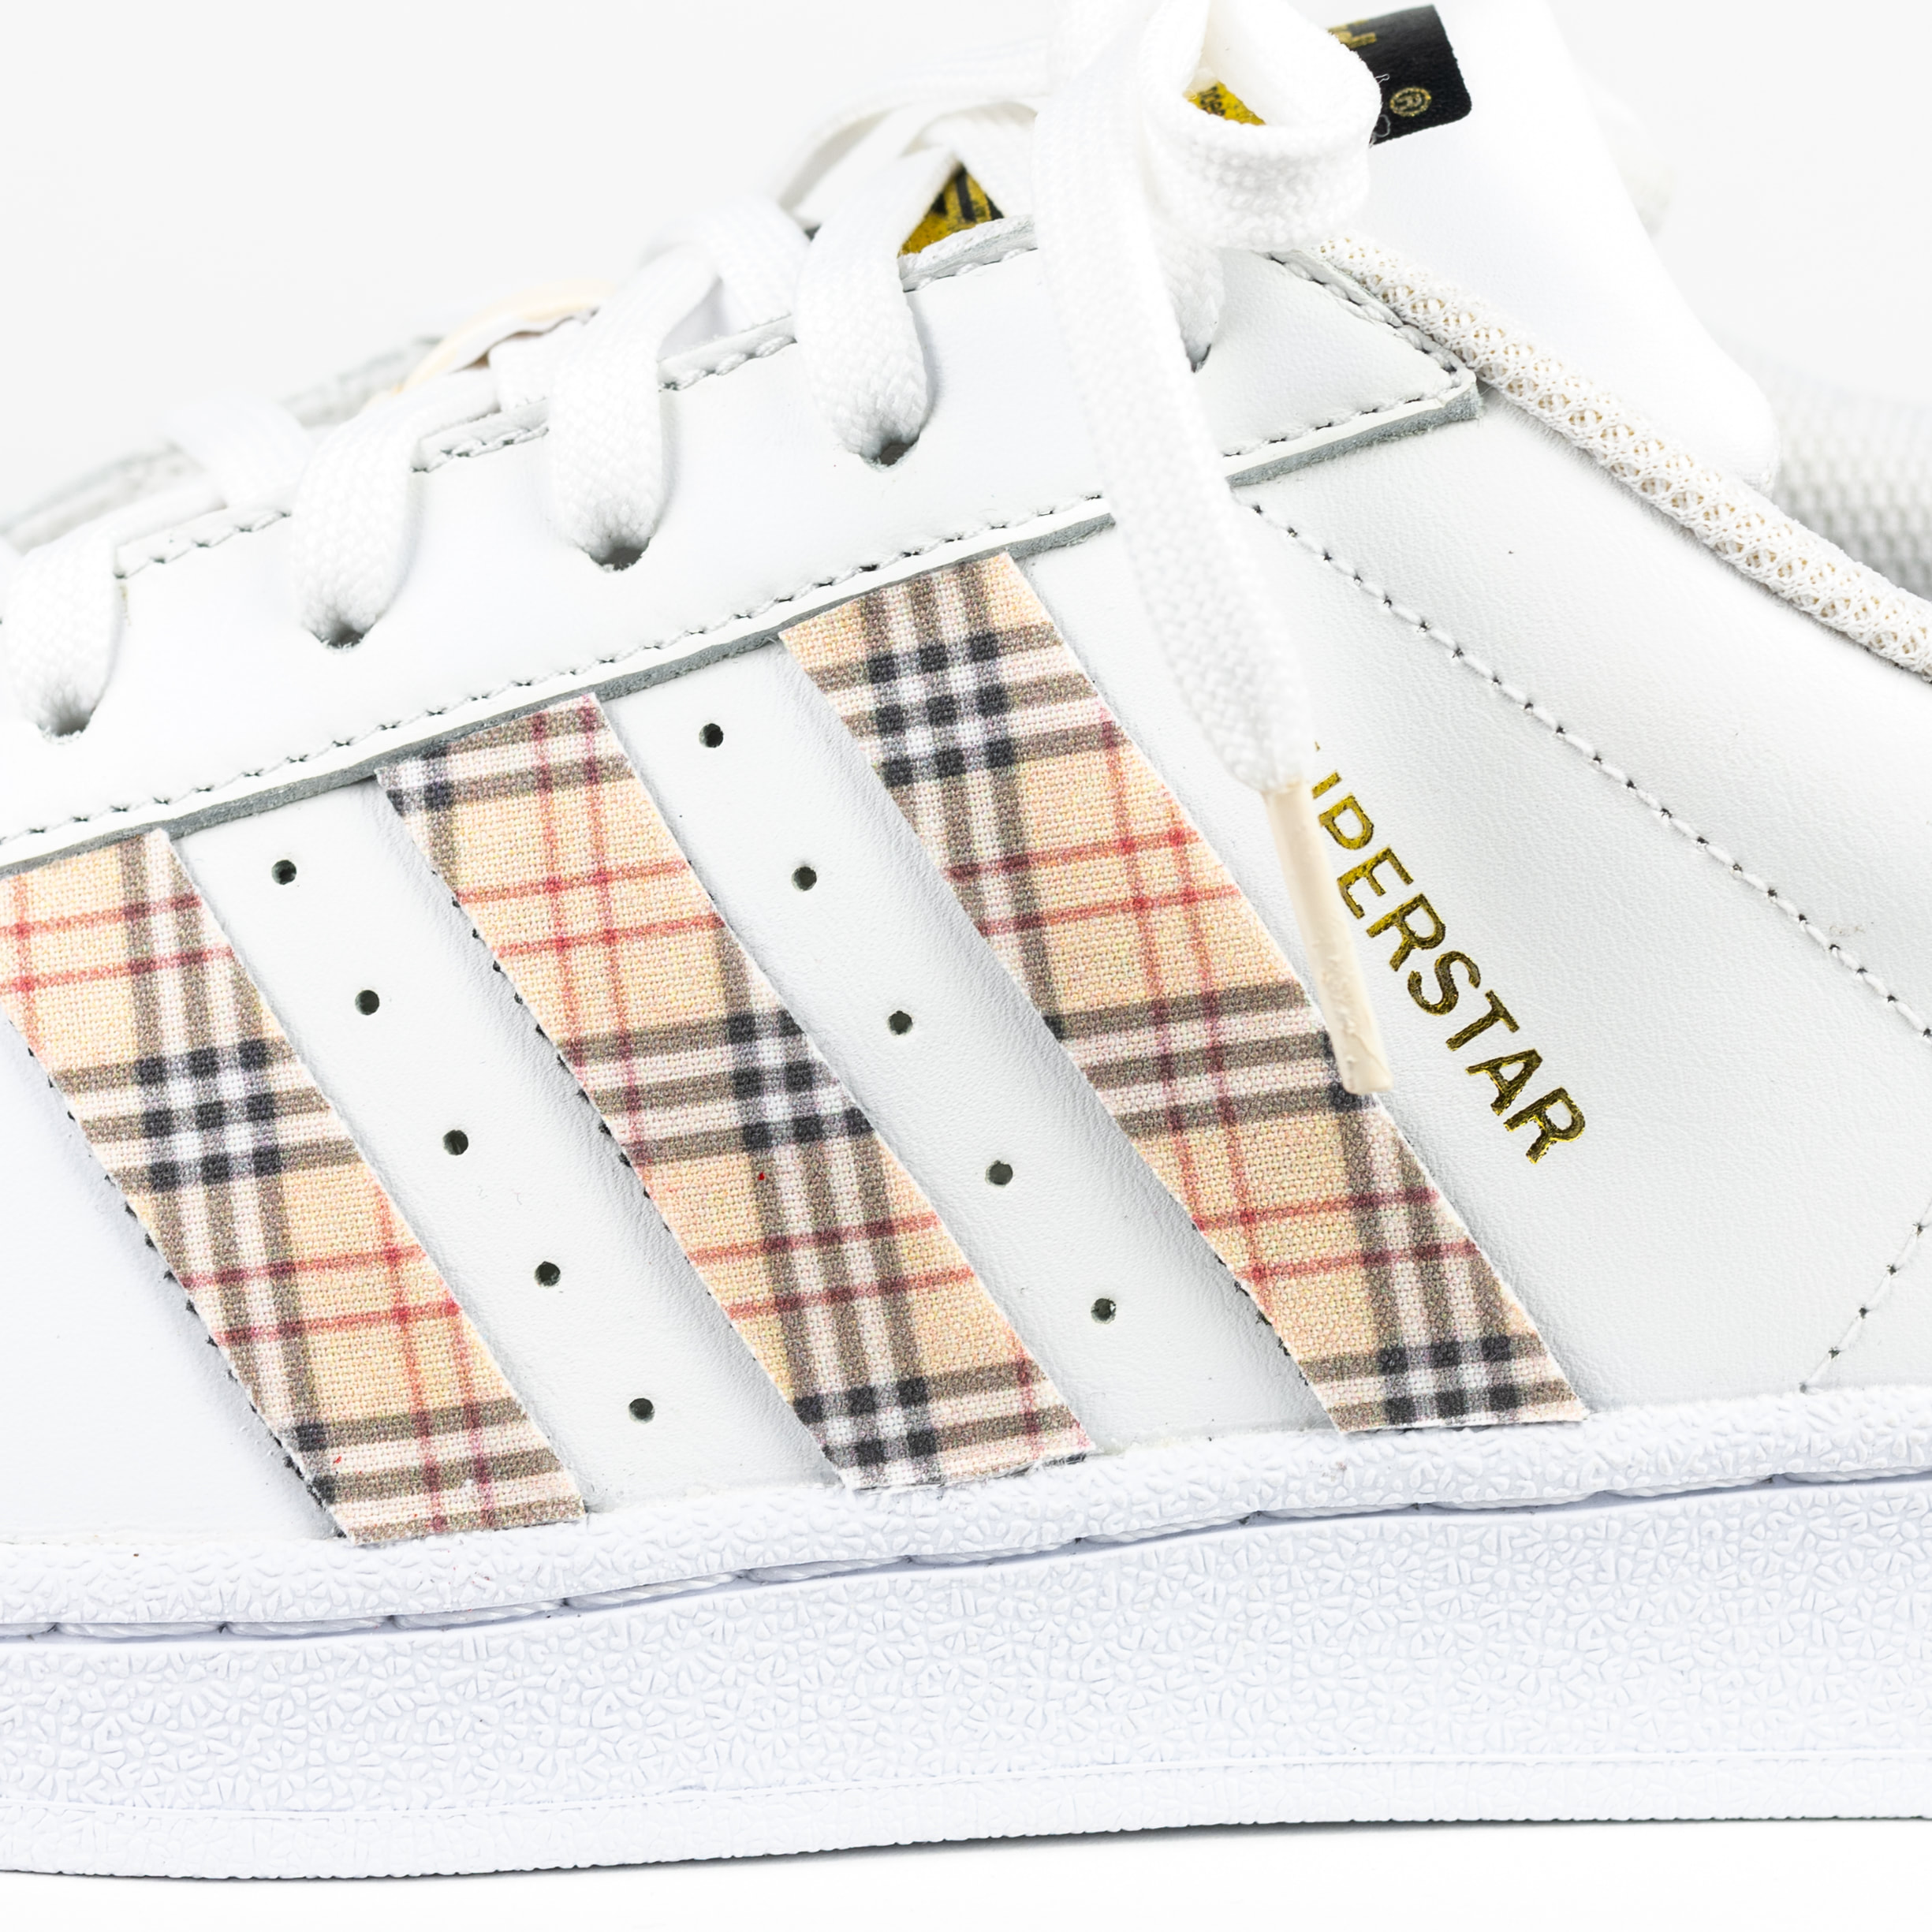 Adidas Superstar Custom White 'Plaid' Premo Shell Toe Edition